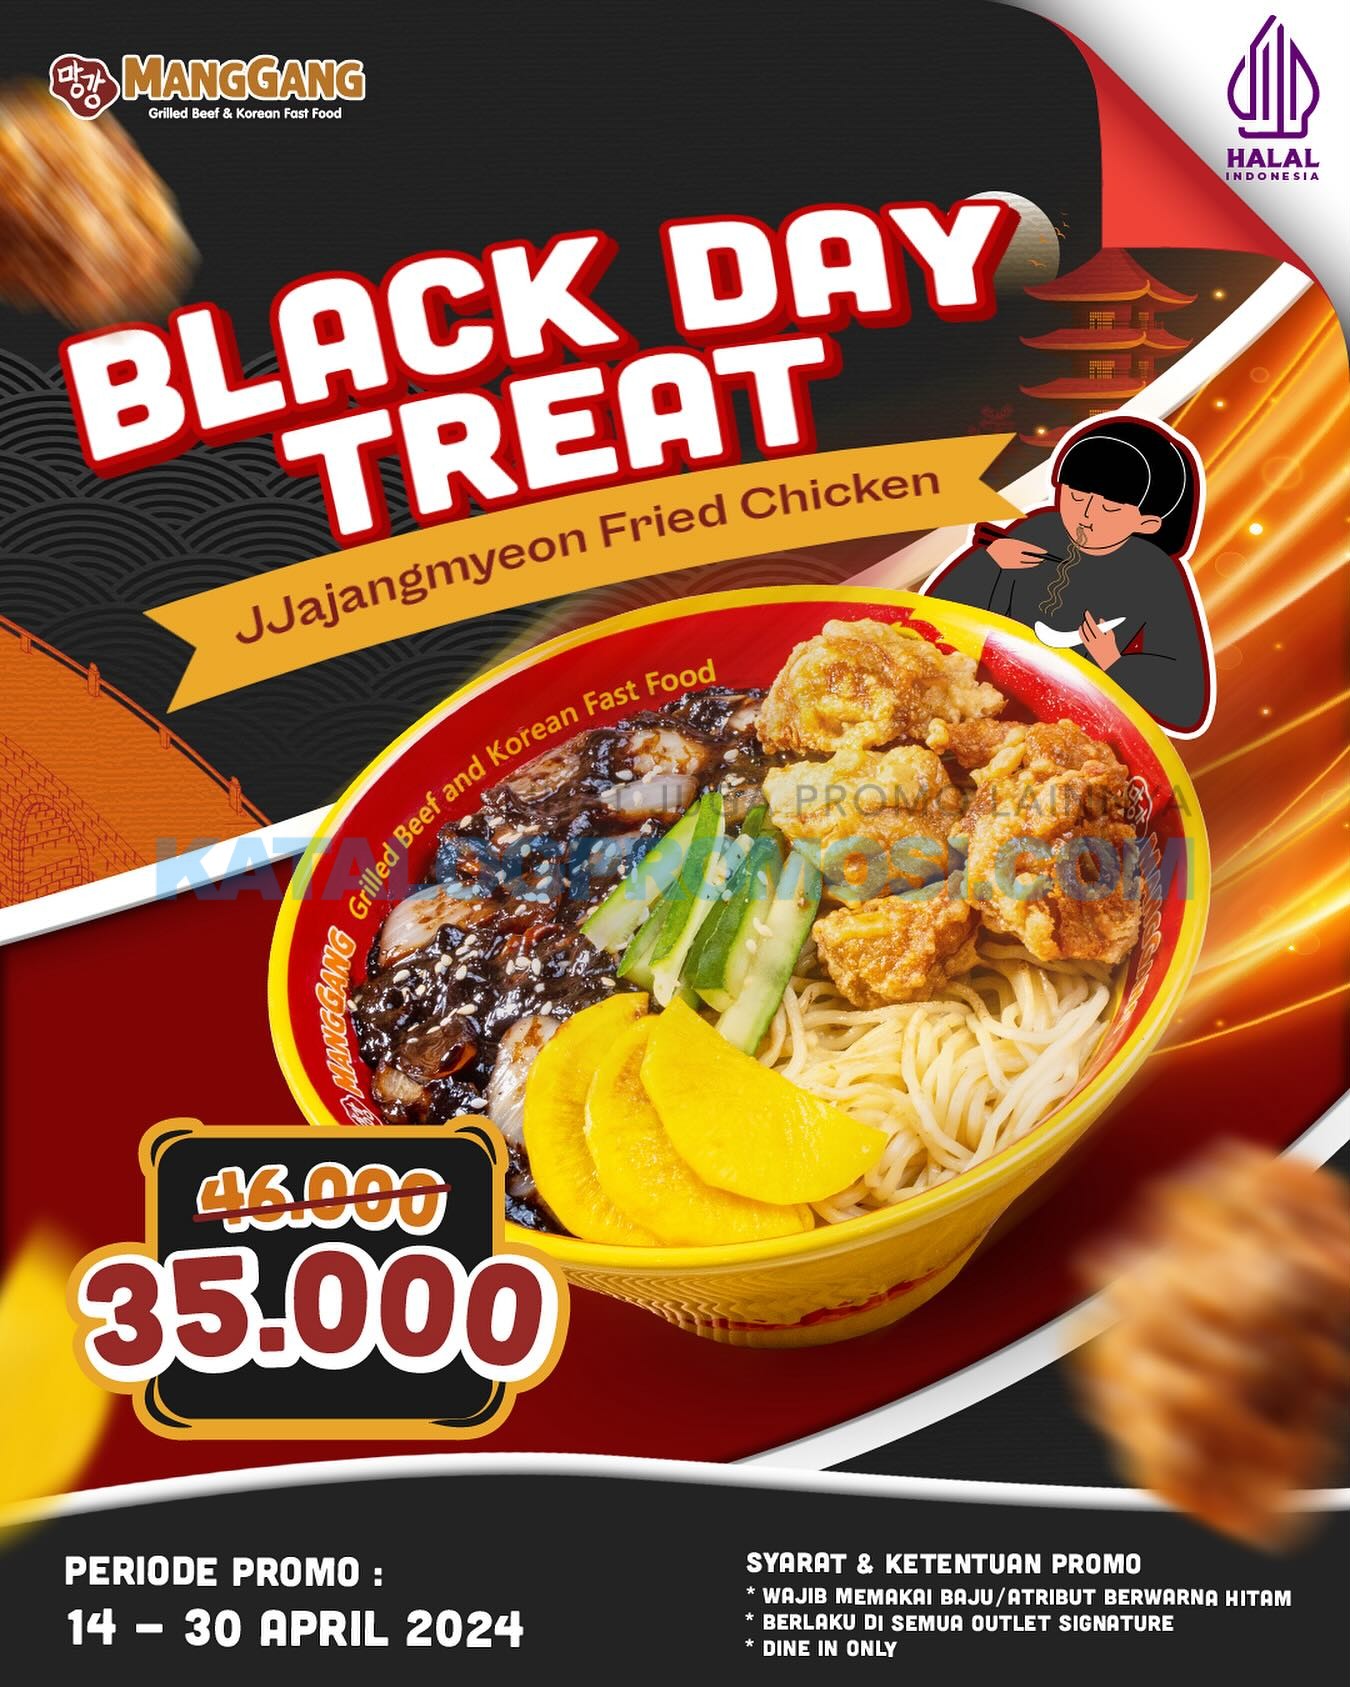 Promo MangGang BLACK DAY TREAT! Jjajangmyeon Fried Chicken cuma Rp. 35.000 berlaku mulai tanggal 14-30 April 2024